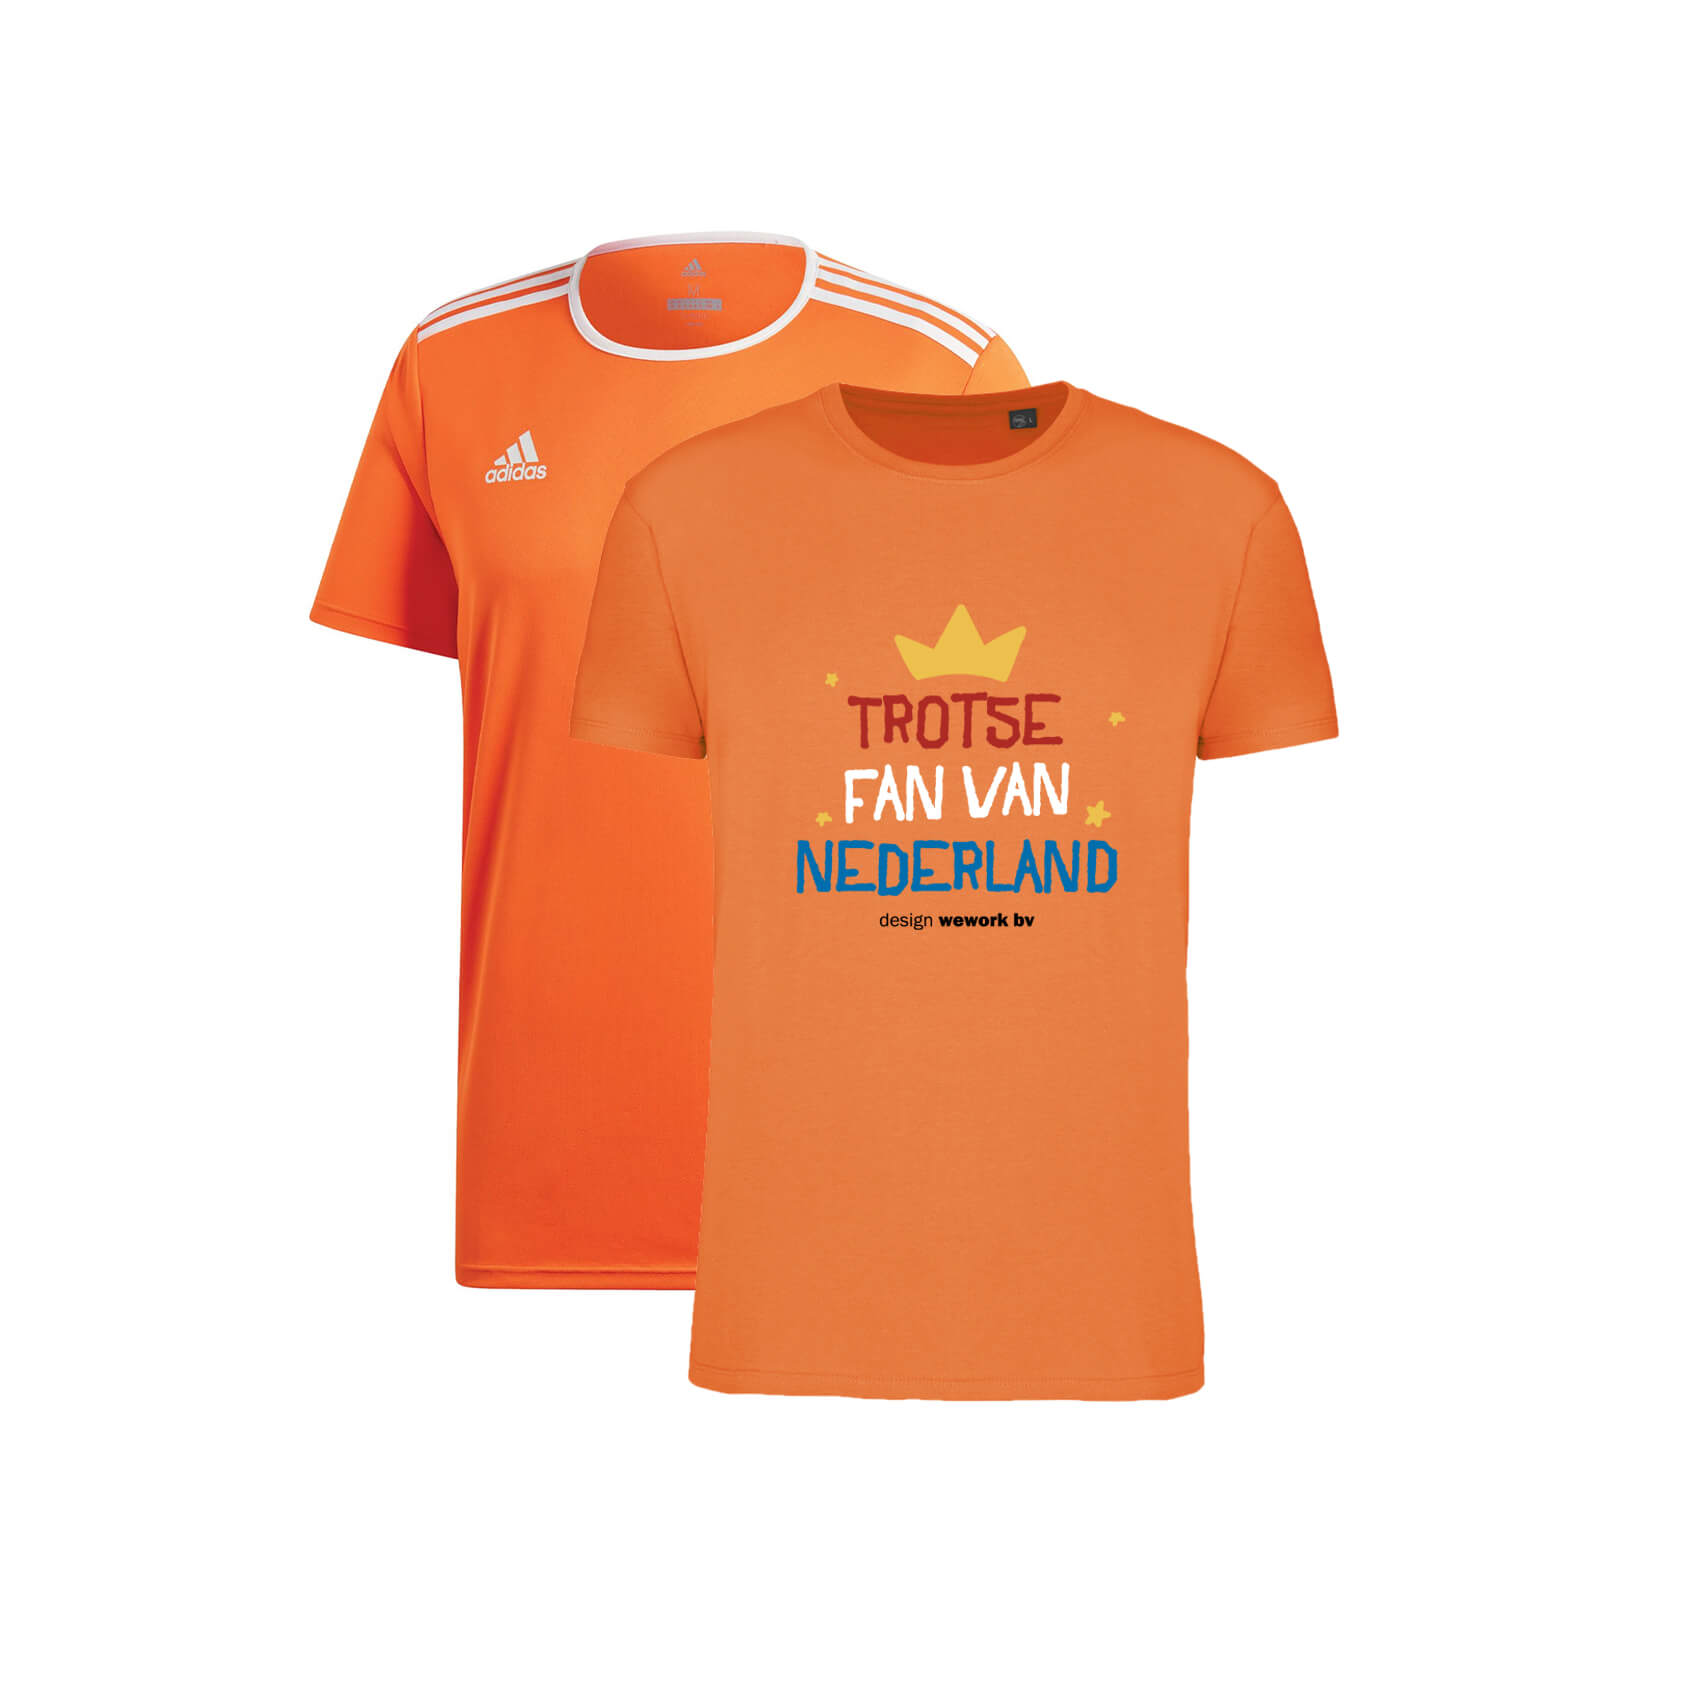 Egypte rijm begrijpen Oranje shirts bedrukken - Kies uit 4 modellen vanaf 5 stuks gedrukt!